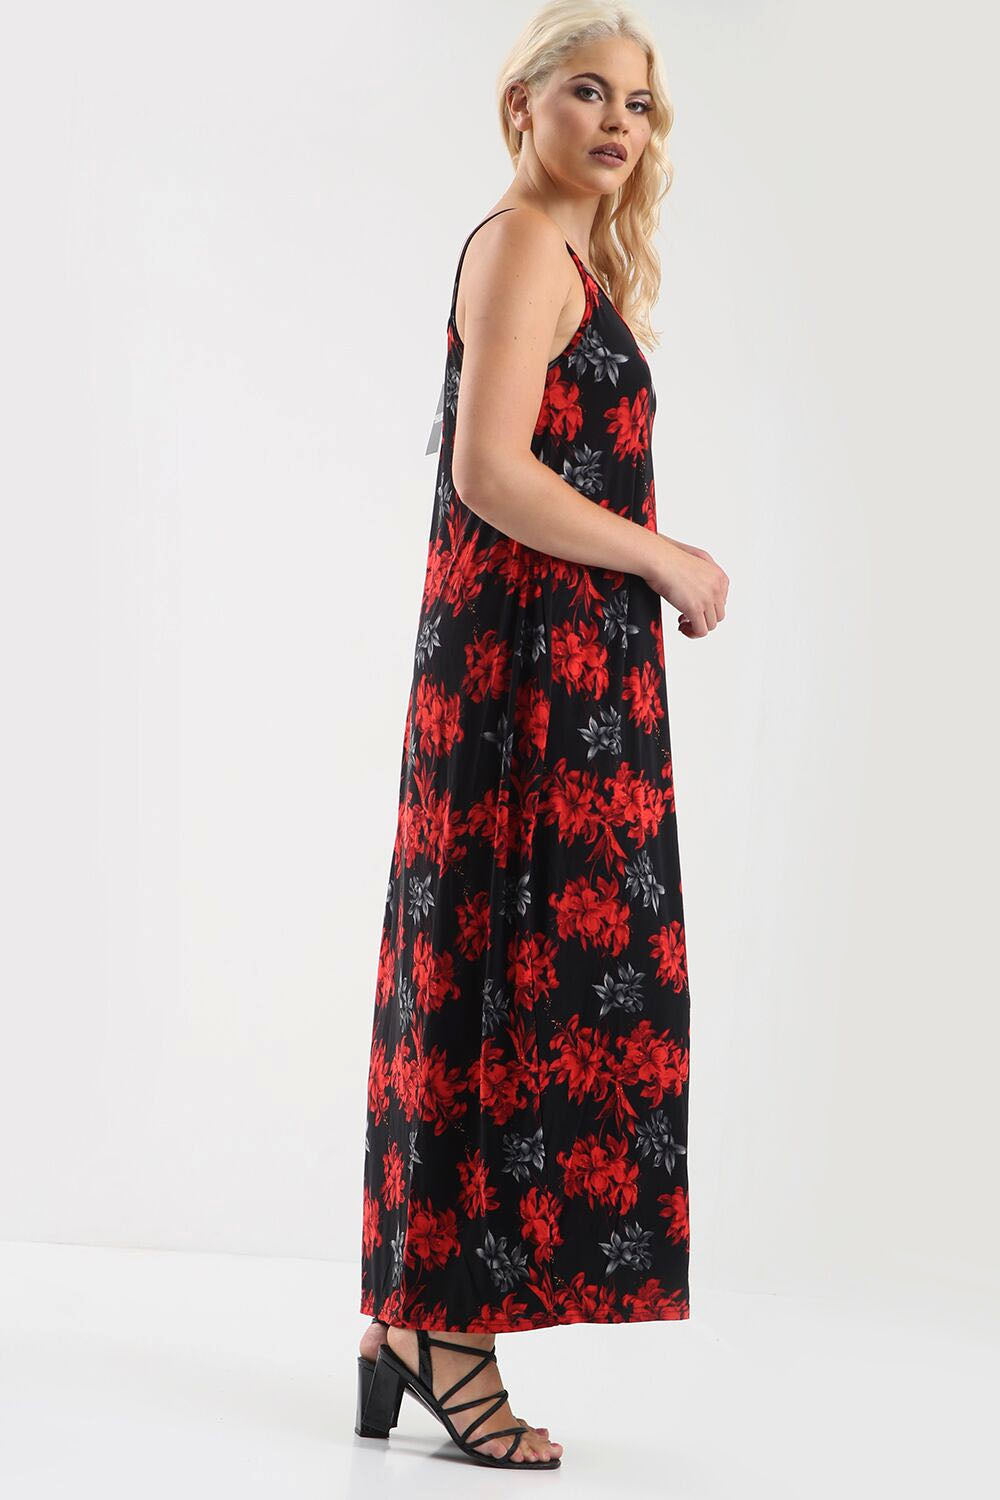 Cami Floral Print Loose Fit Maxi Dress - bejealous-com